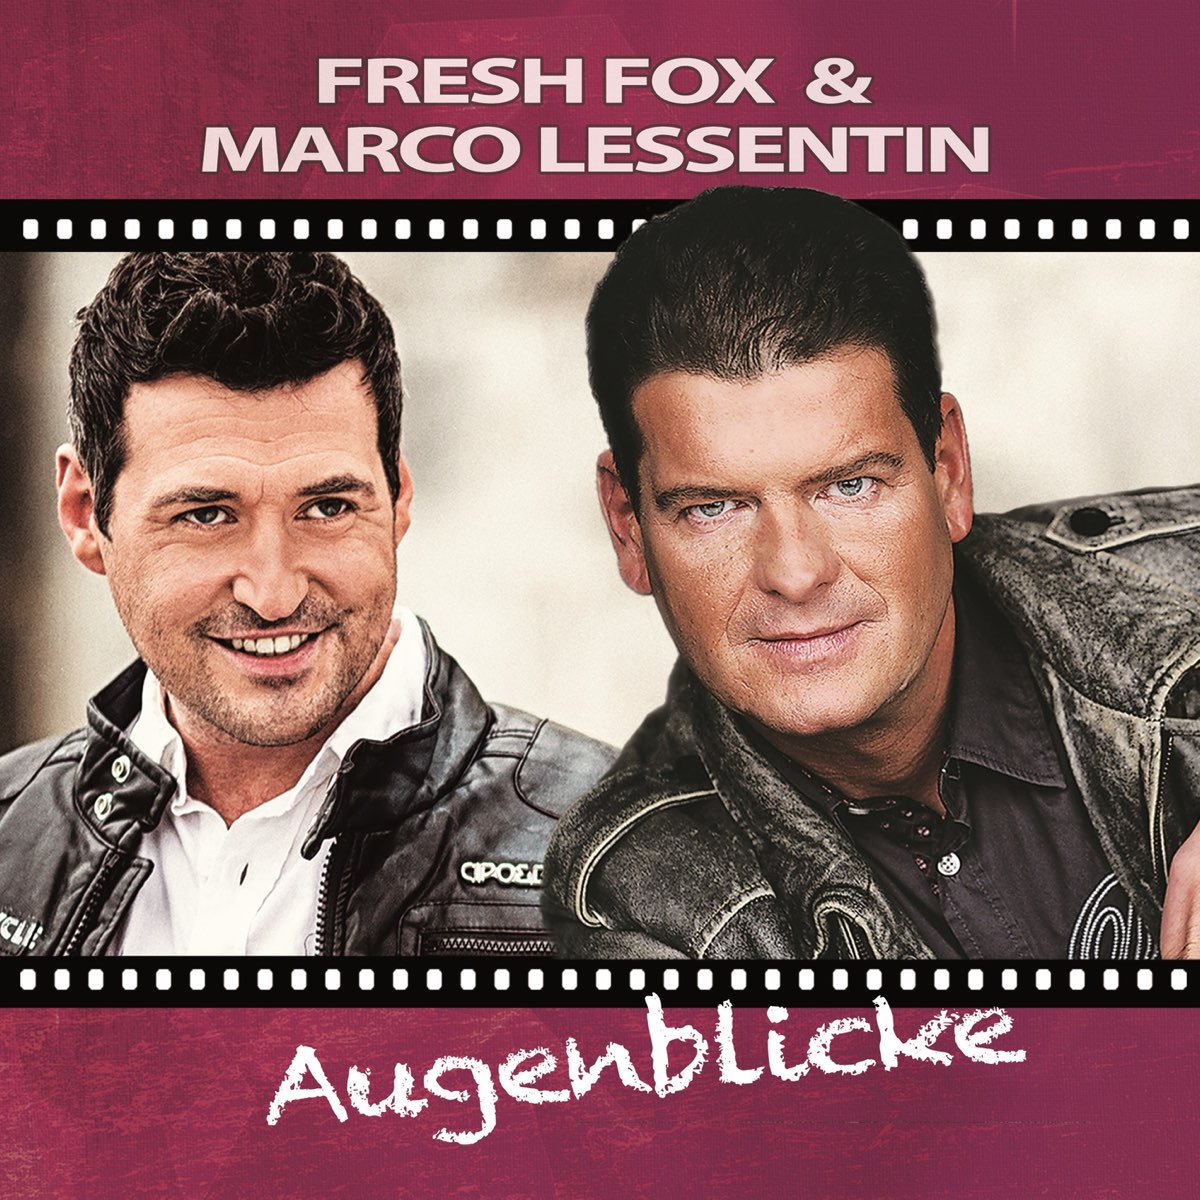 Fresh fox. Marco Lessentin. Fresh Fox Tonight. Fresh Fox 2005 - Tonight.